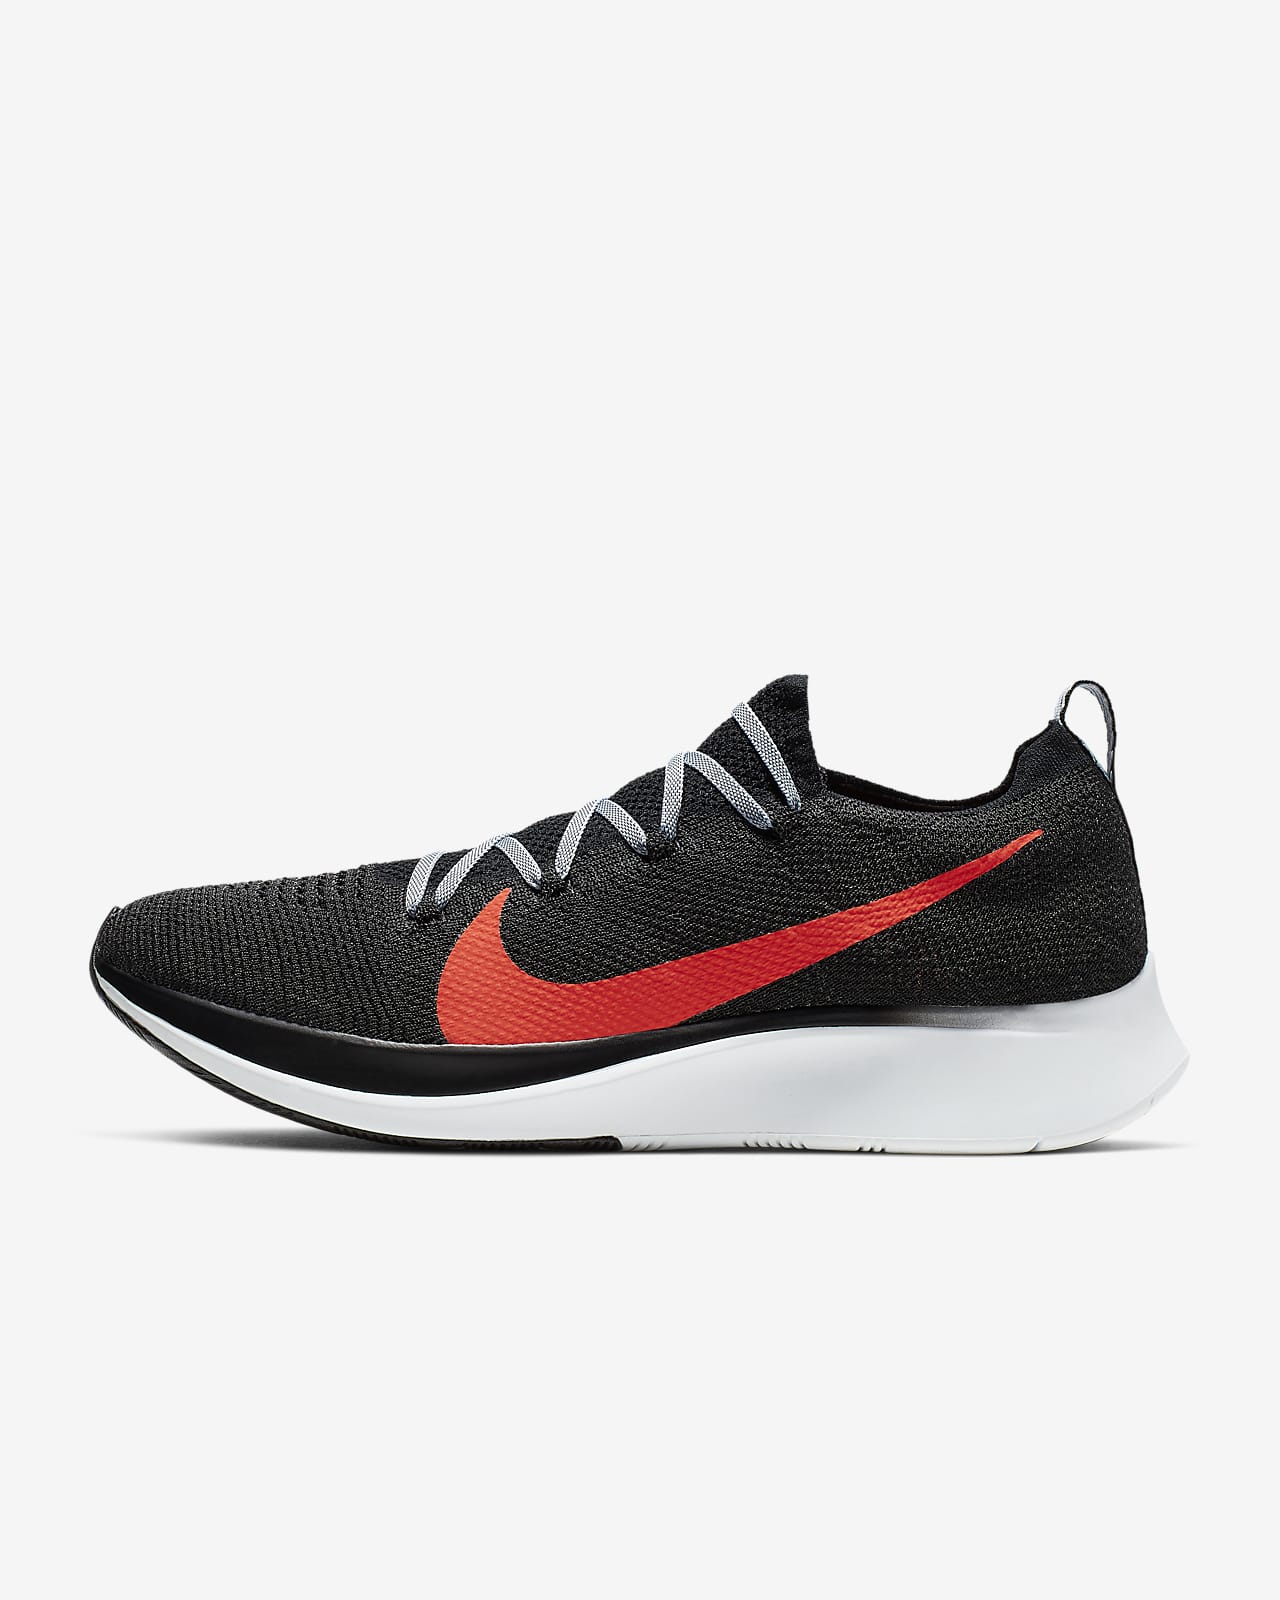 Nike Zoom Fly Flyknit Men's Running Shoe